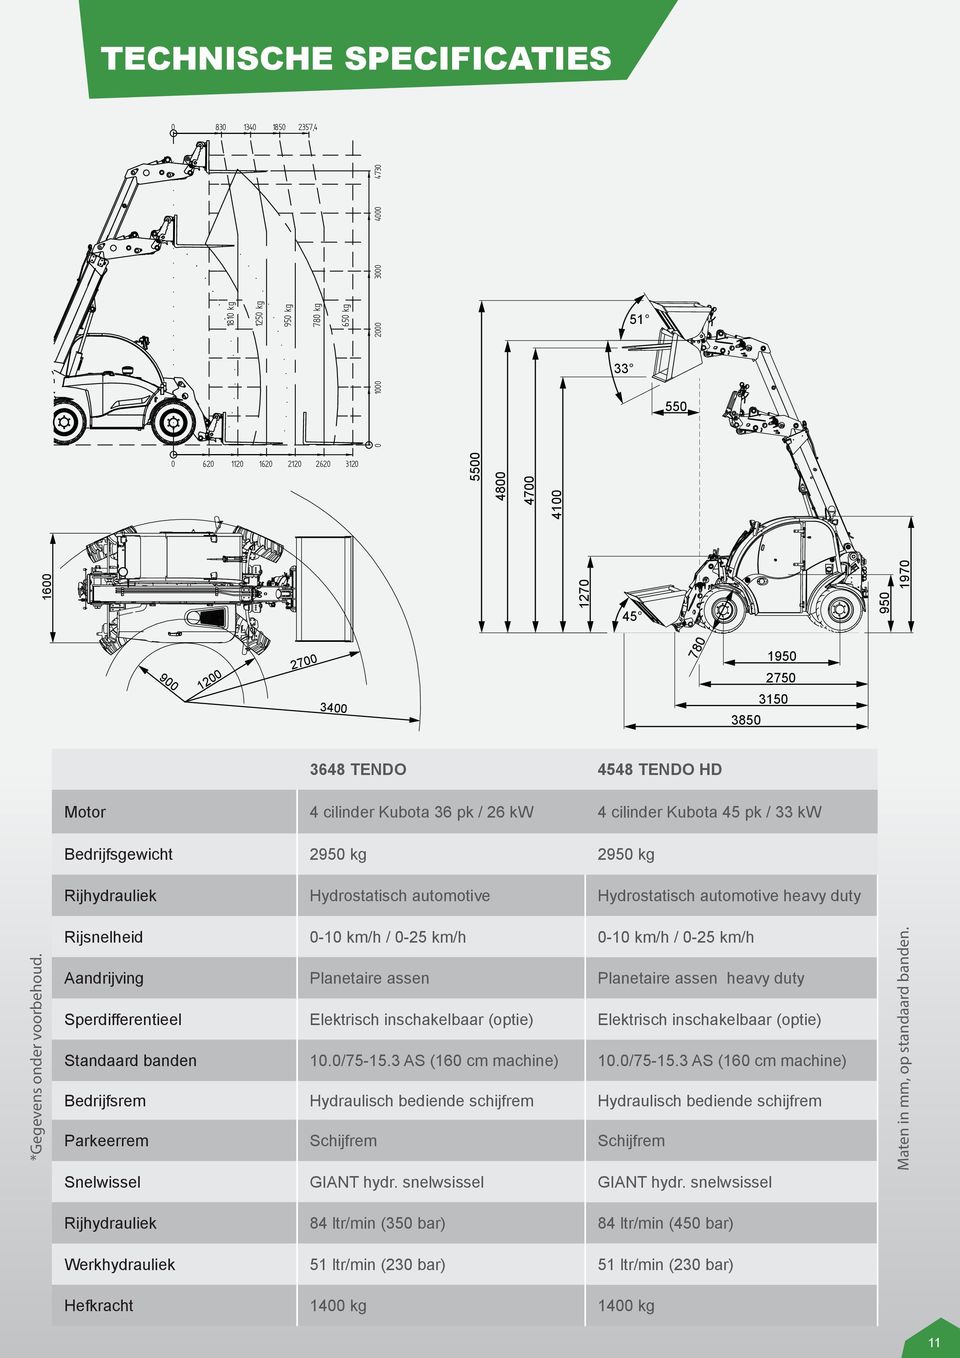 automotive Hydrostatisch automotive heavy duty *Gegevens onder voorbehoud.